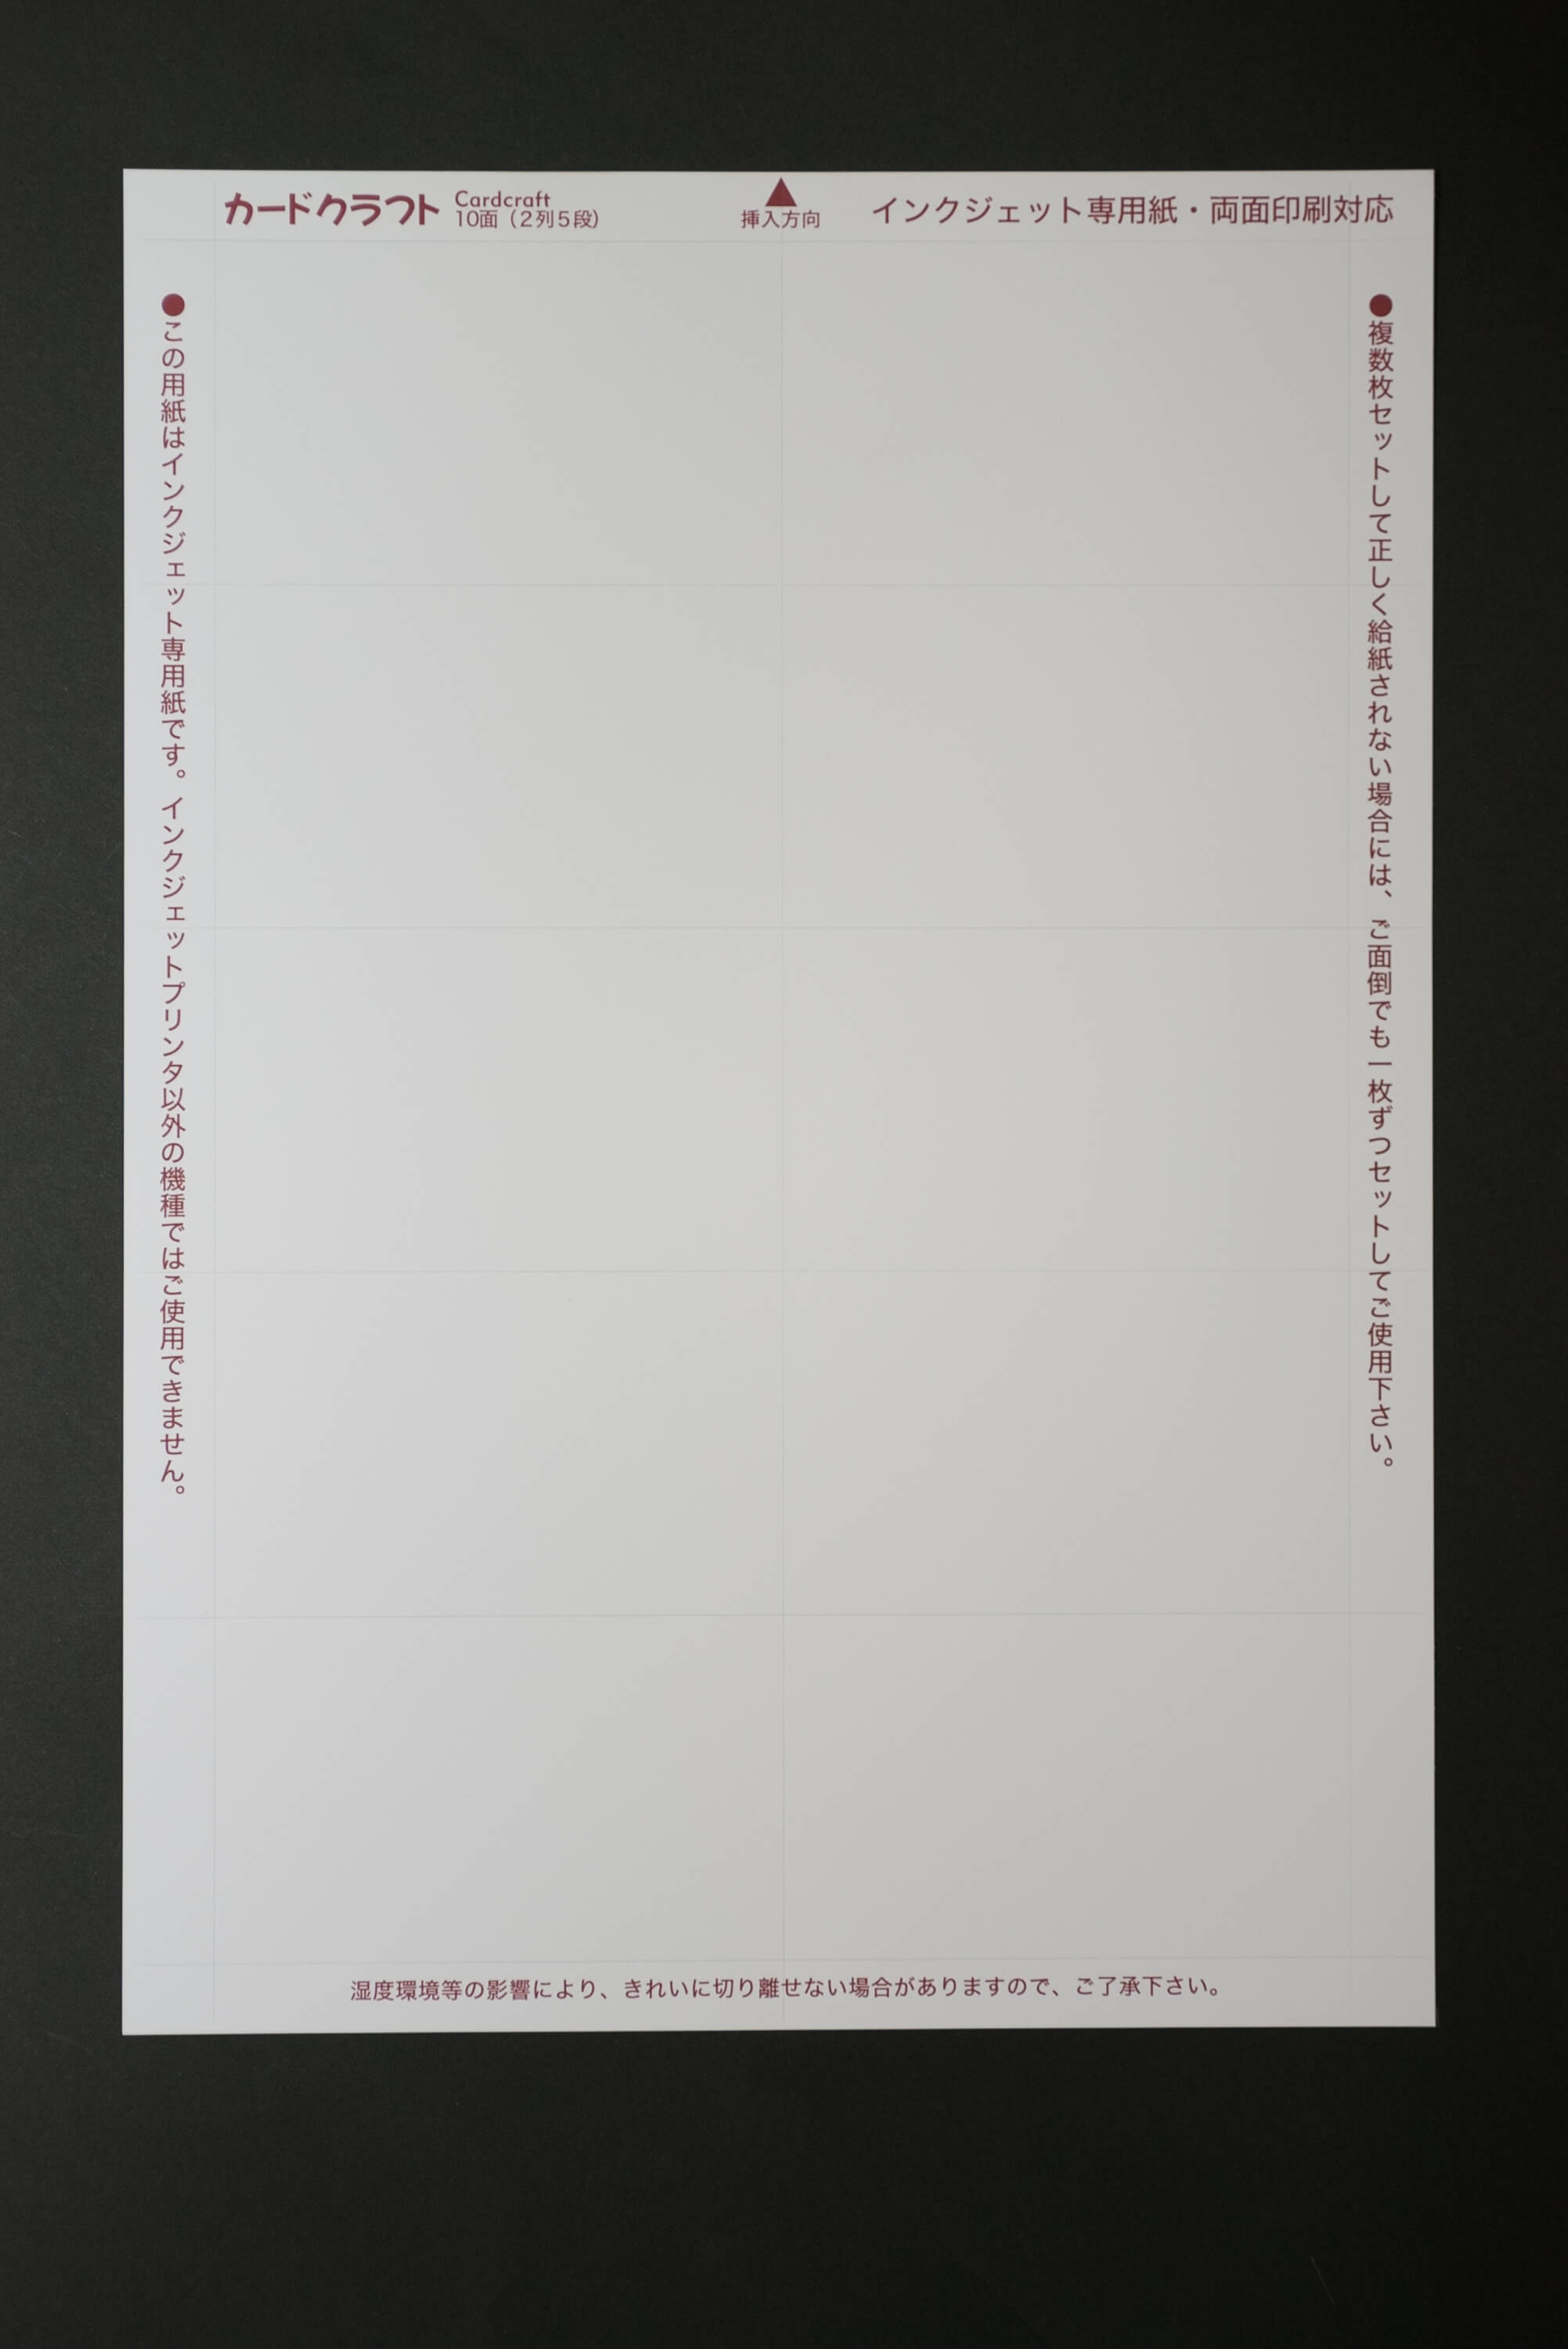 カードクラフト名刺用紙 インクジェットプリンター専用 10面フォーマット画像 ホワイト